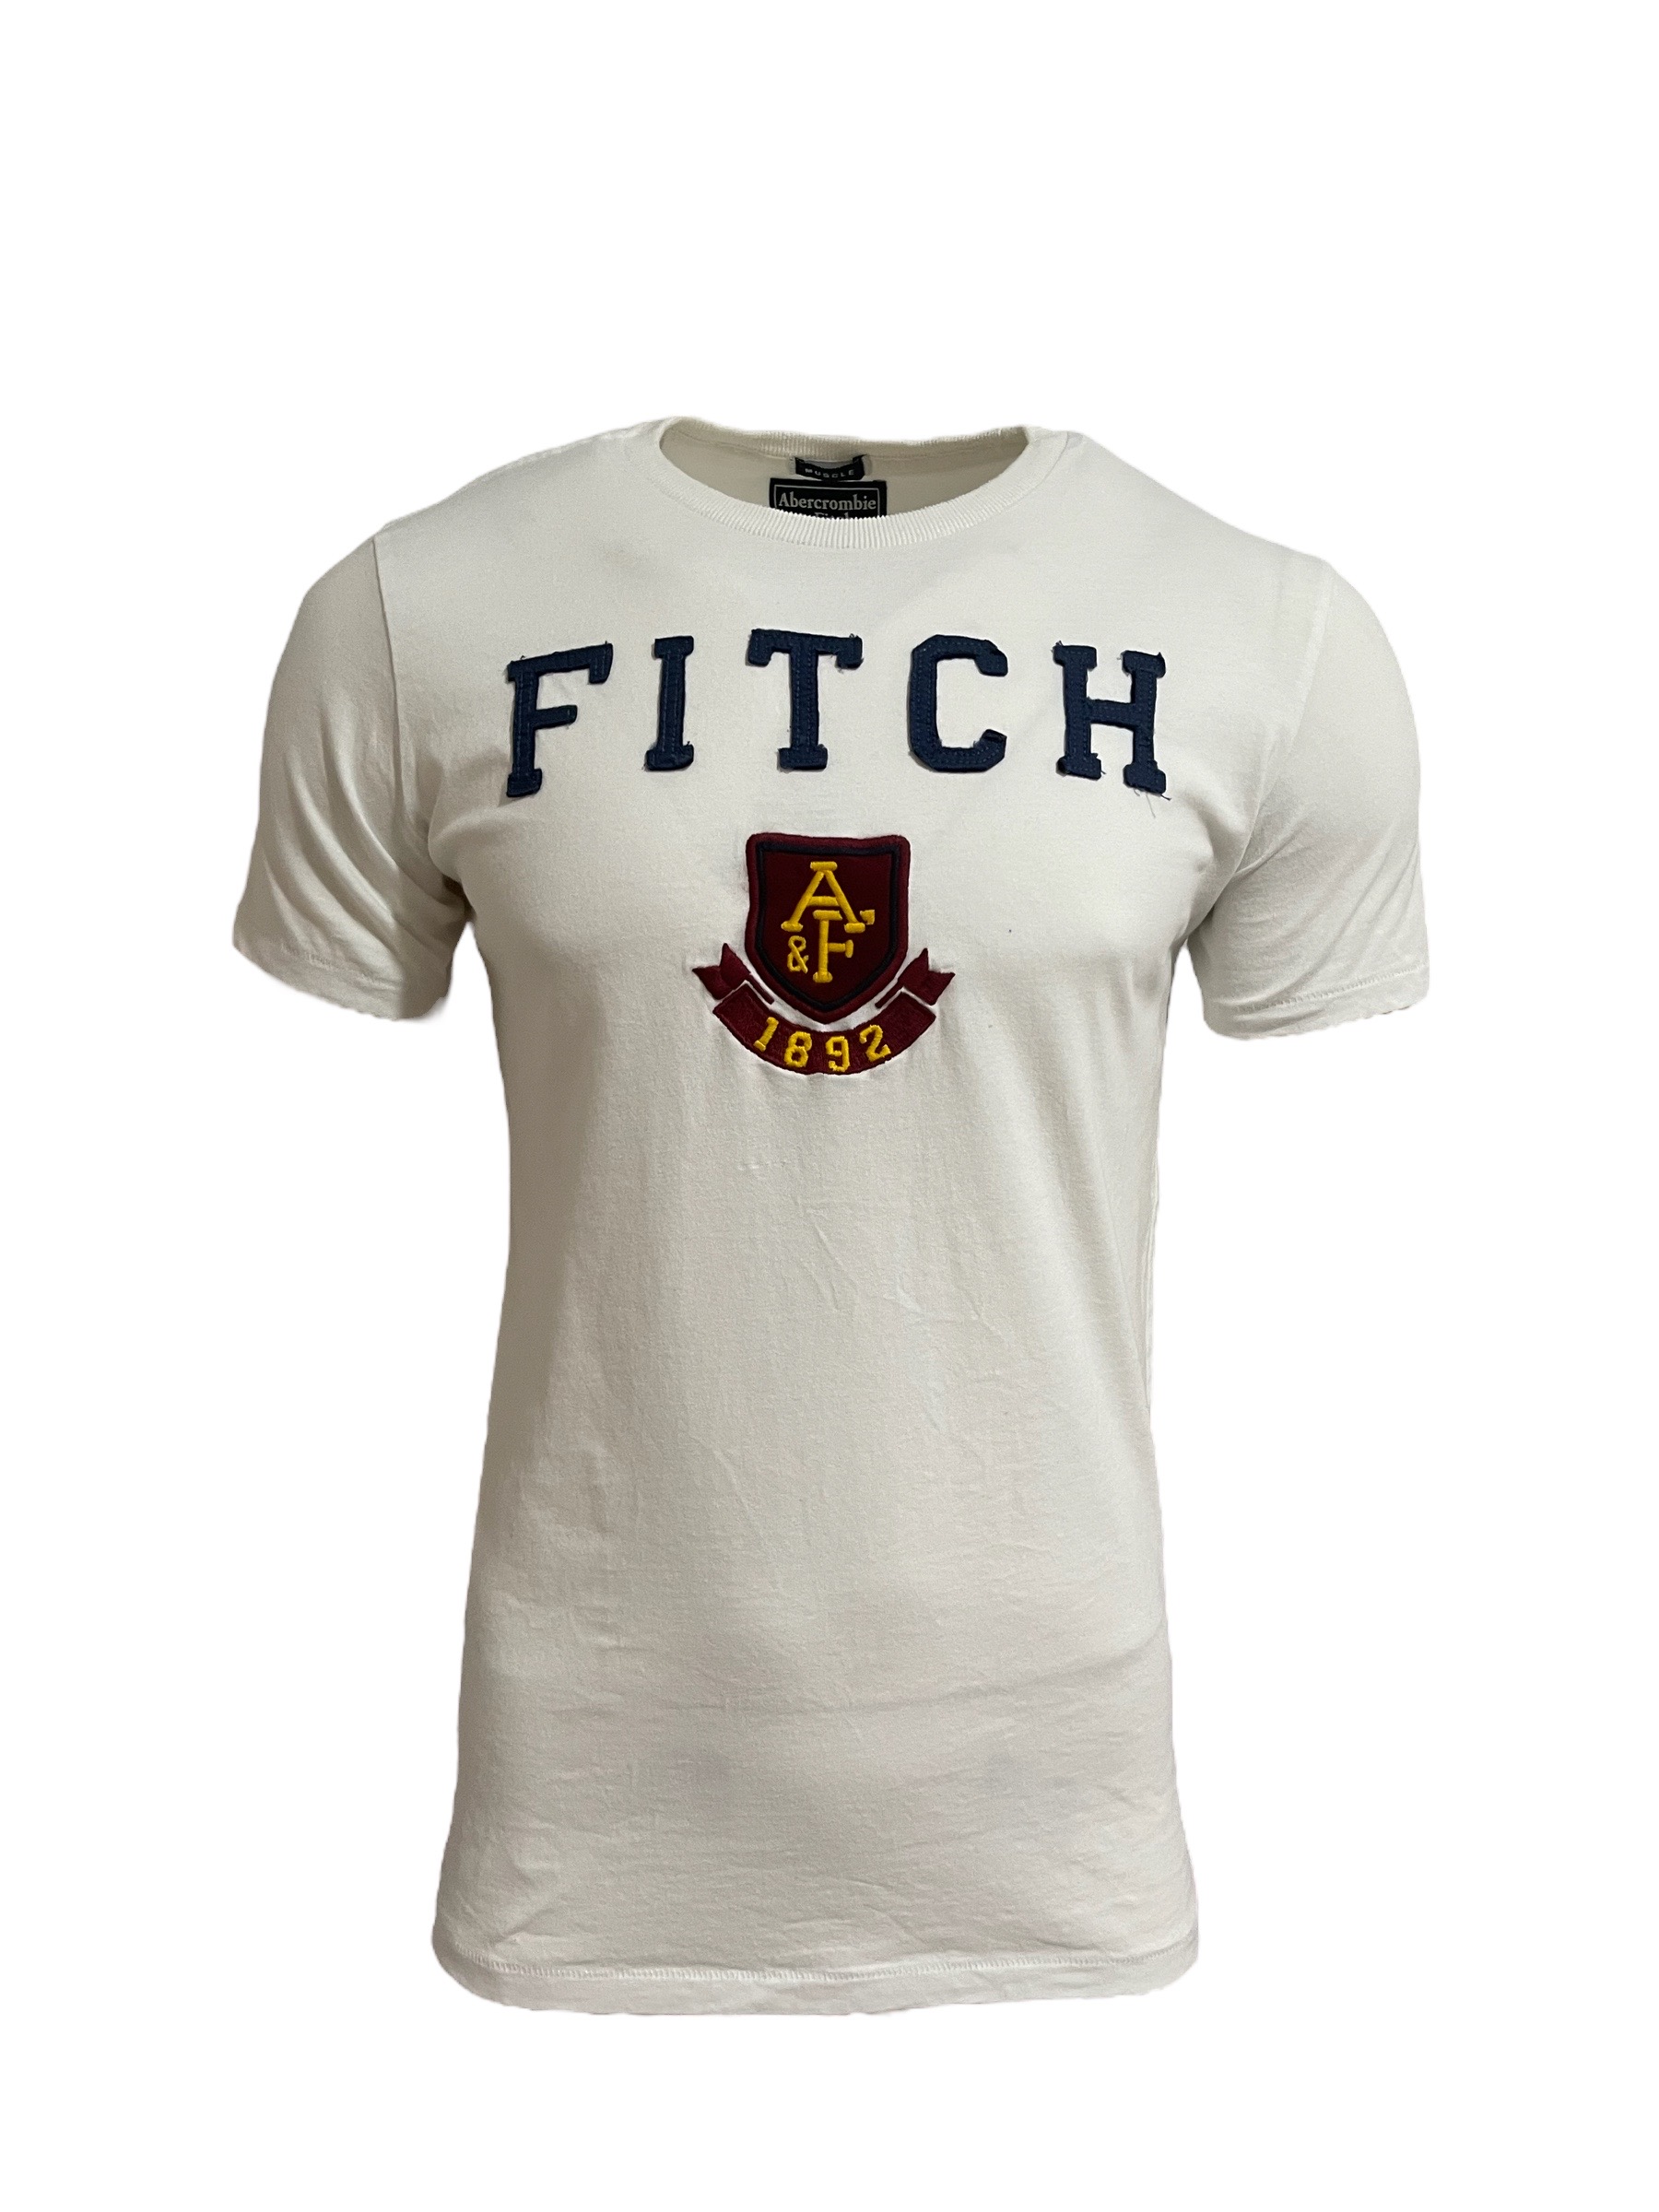 Camiseta Abercrombie Masculina 1892 Branca - Gareth | Store Men